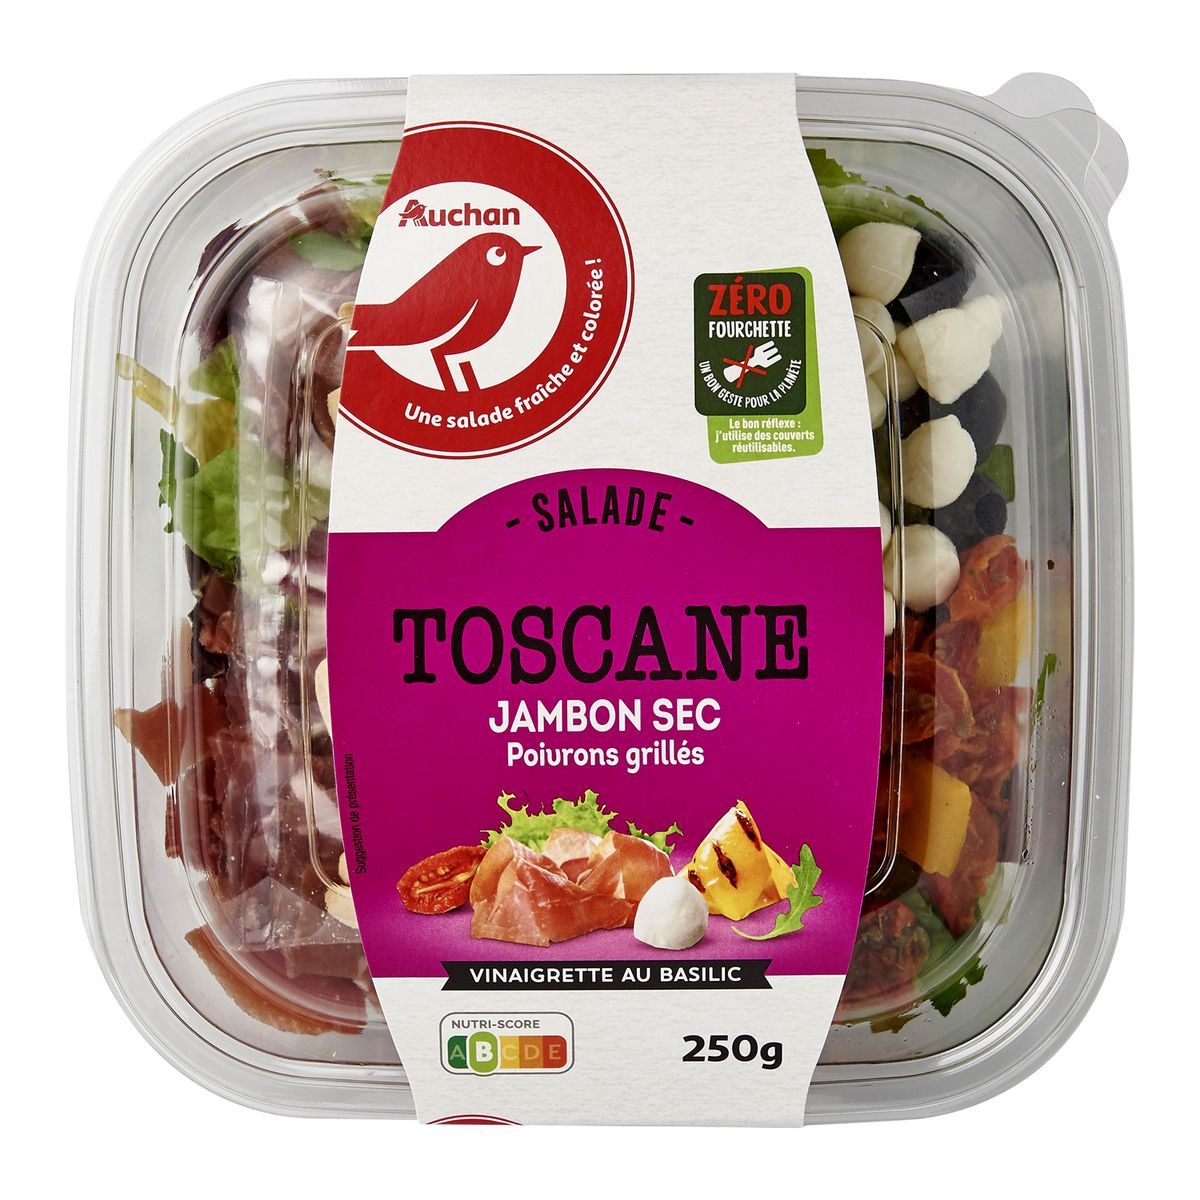 AUCHAN Salade Toscane jambon sec et poivrons grillés sans couverts 250g